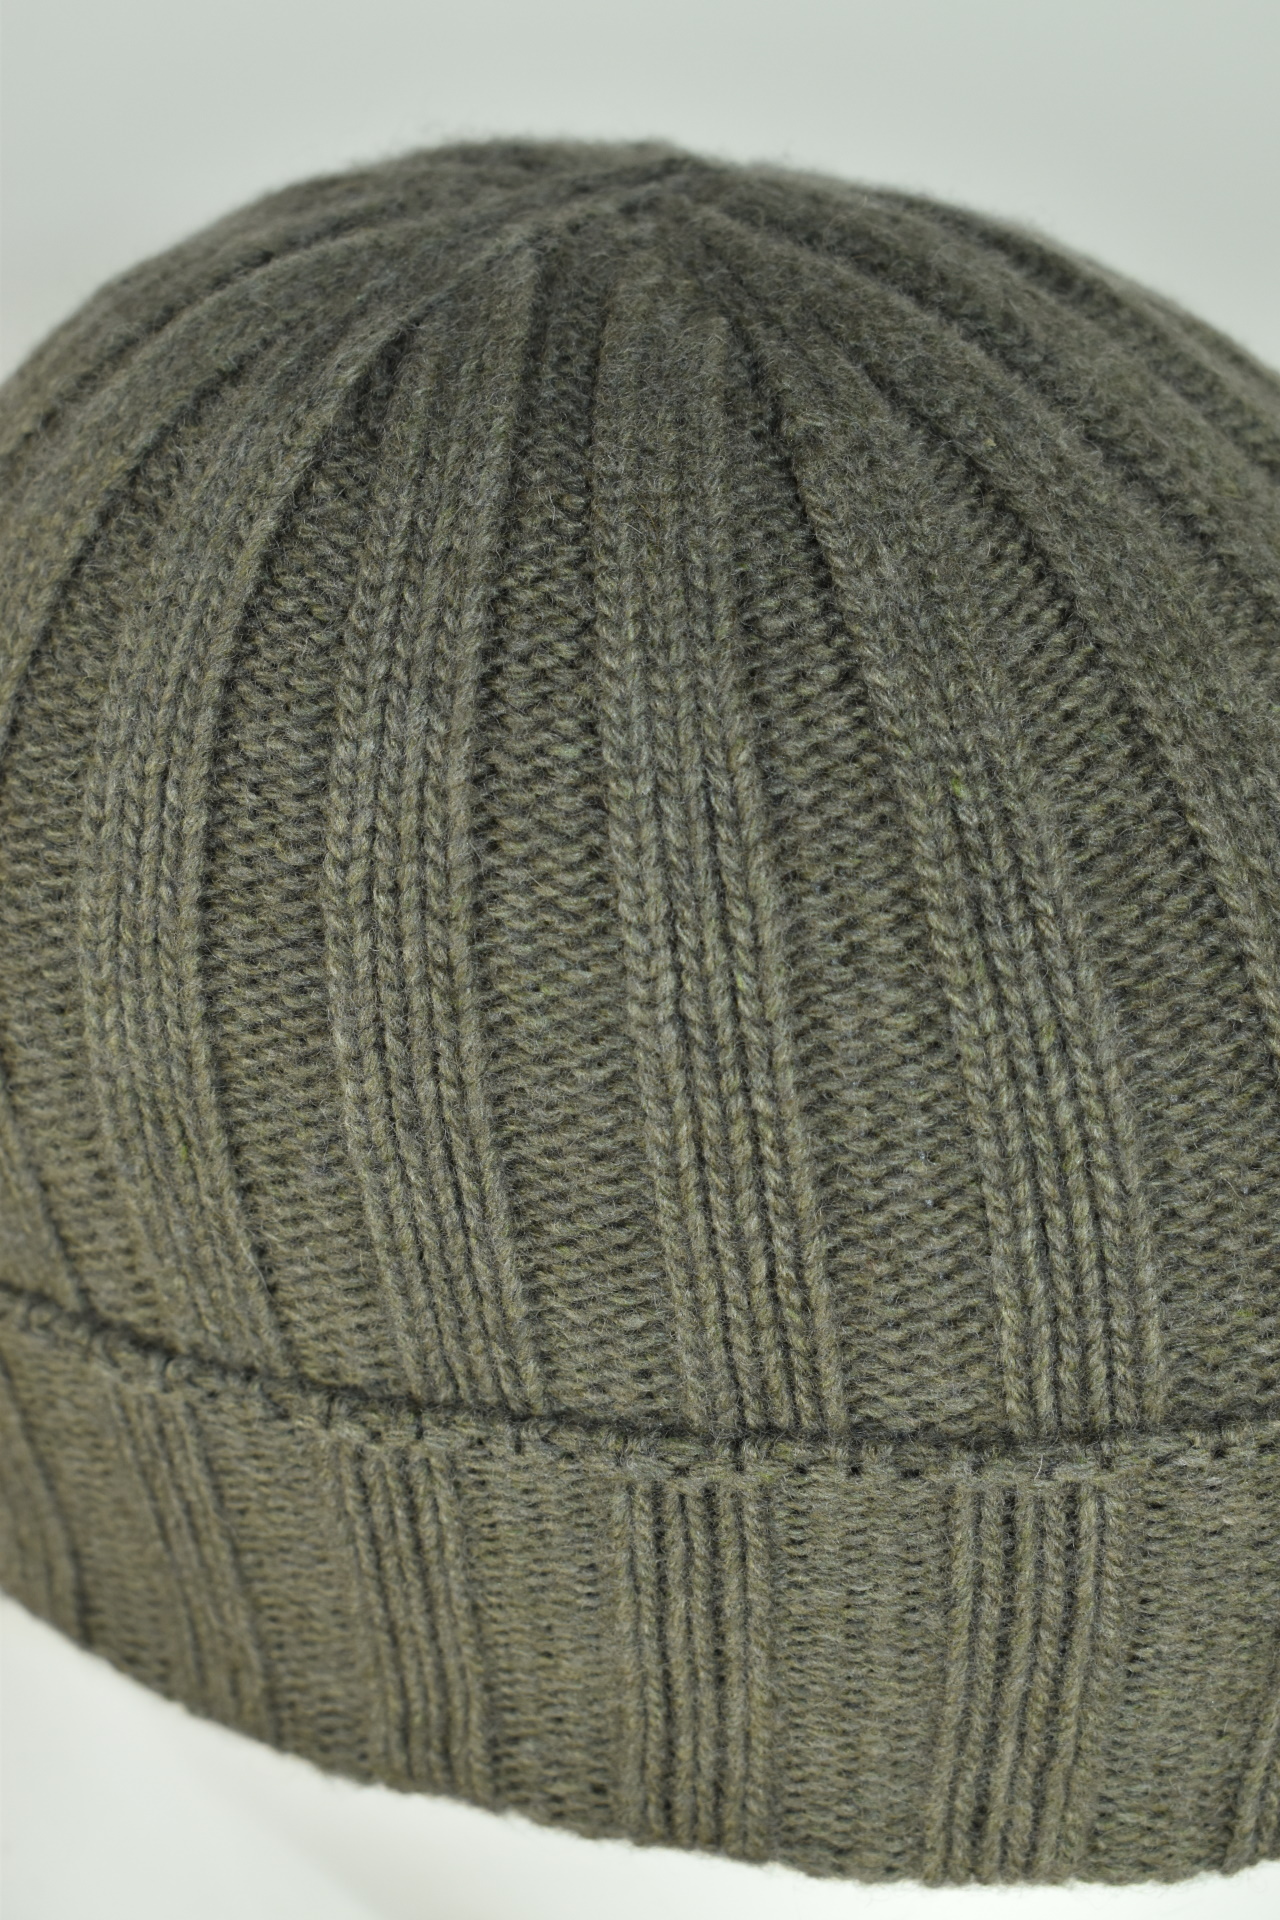 WALLISDARIO ARMY CAPPELLINO UOMO CASHMERE E LANA 3 1stAmerican cappellino lana e cashmere Made in Italy da uomo - caldo berretto invernale a coste larghe